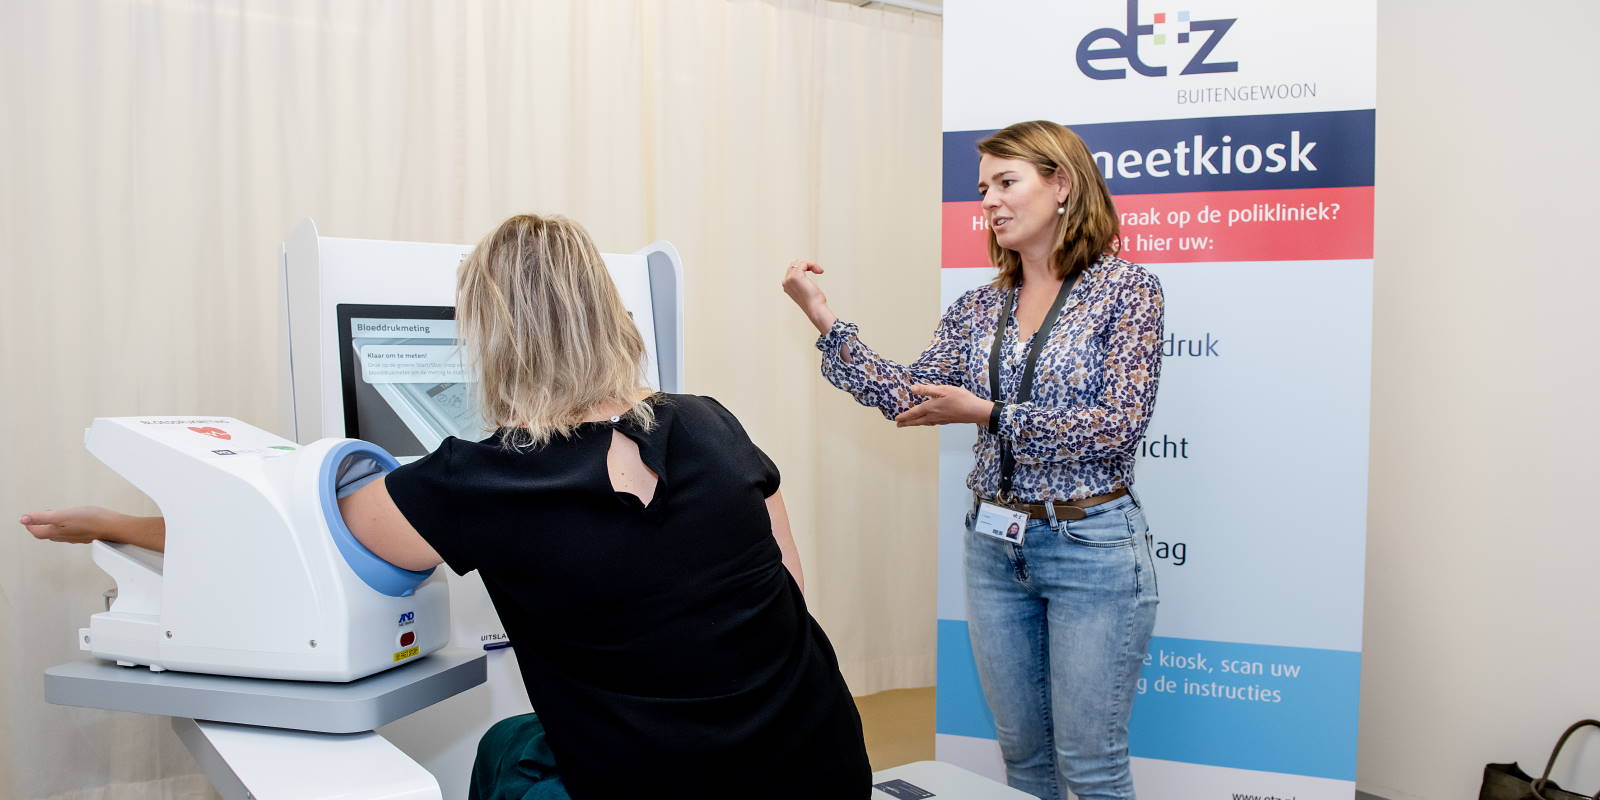 Een patiënt krijgt instructies voor de Zelfmeetkiosk. Foto: ETZ/Maria van der Heyden